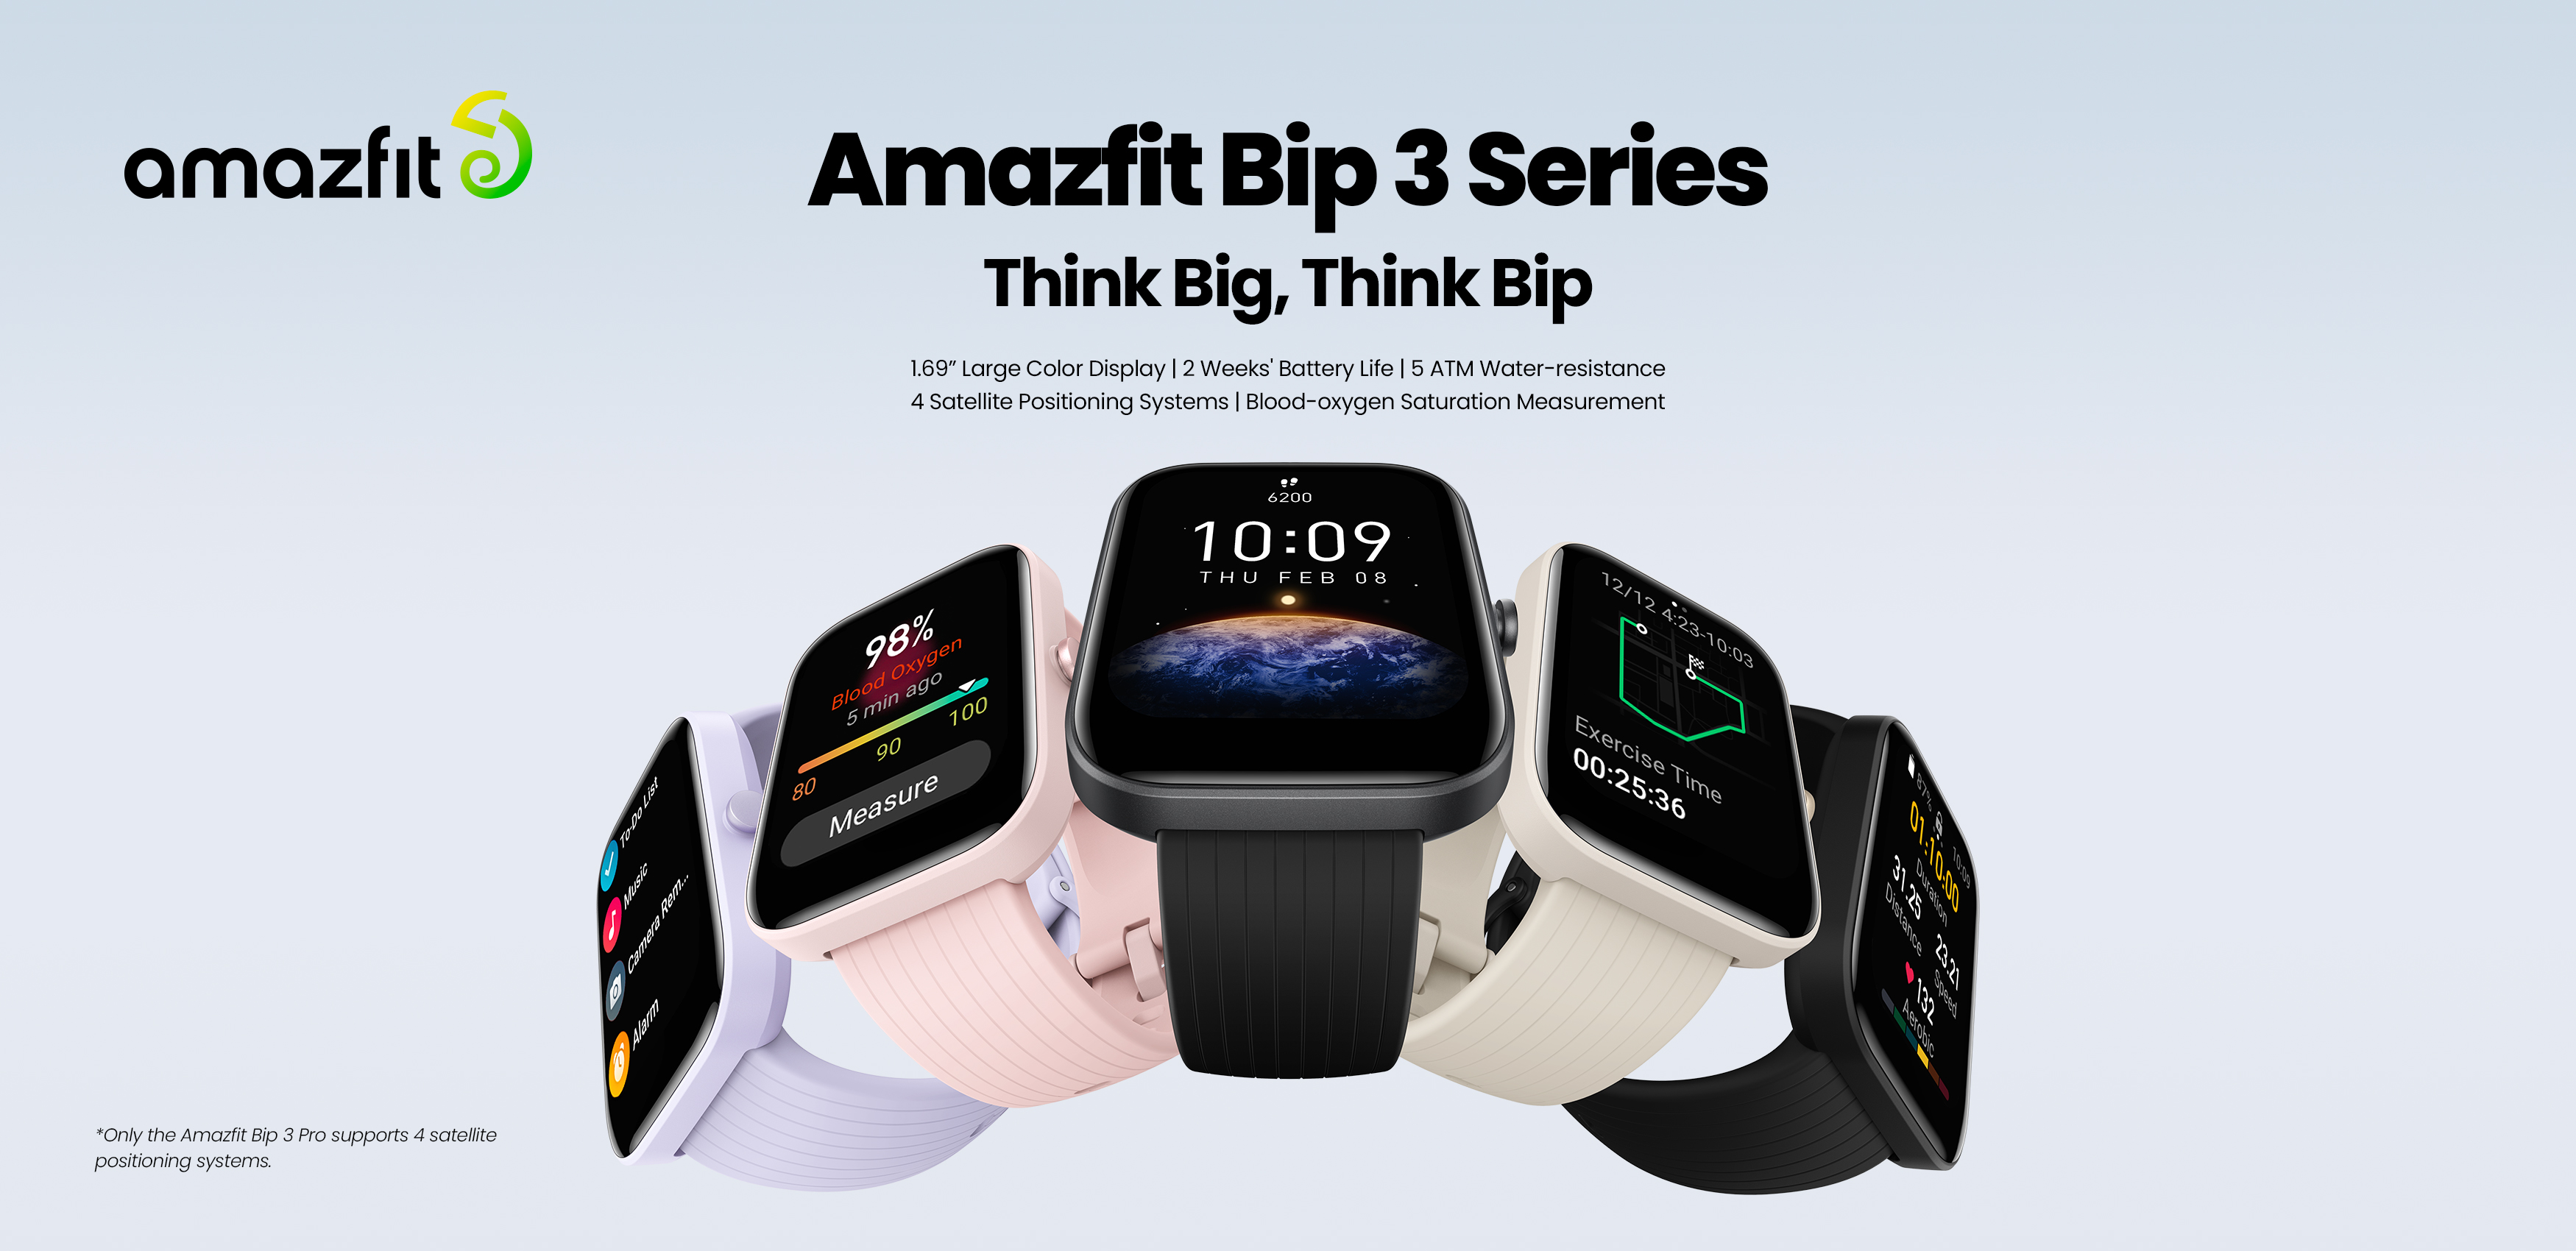 Amazfit」のエントリーモデル「Amazfit Bip 3」シリーズ、20日発売 - ケータイ Watch